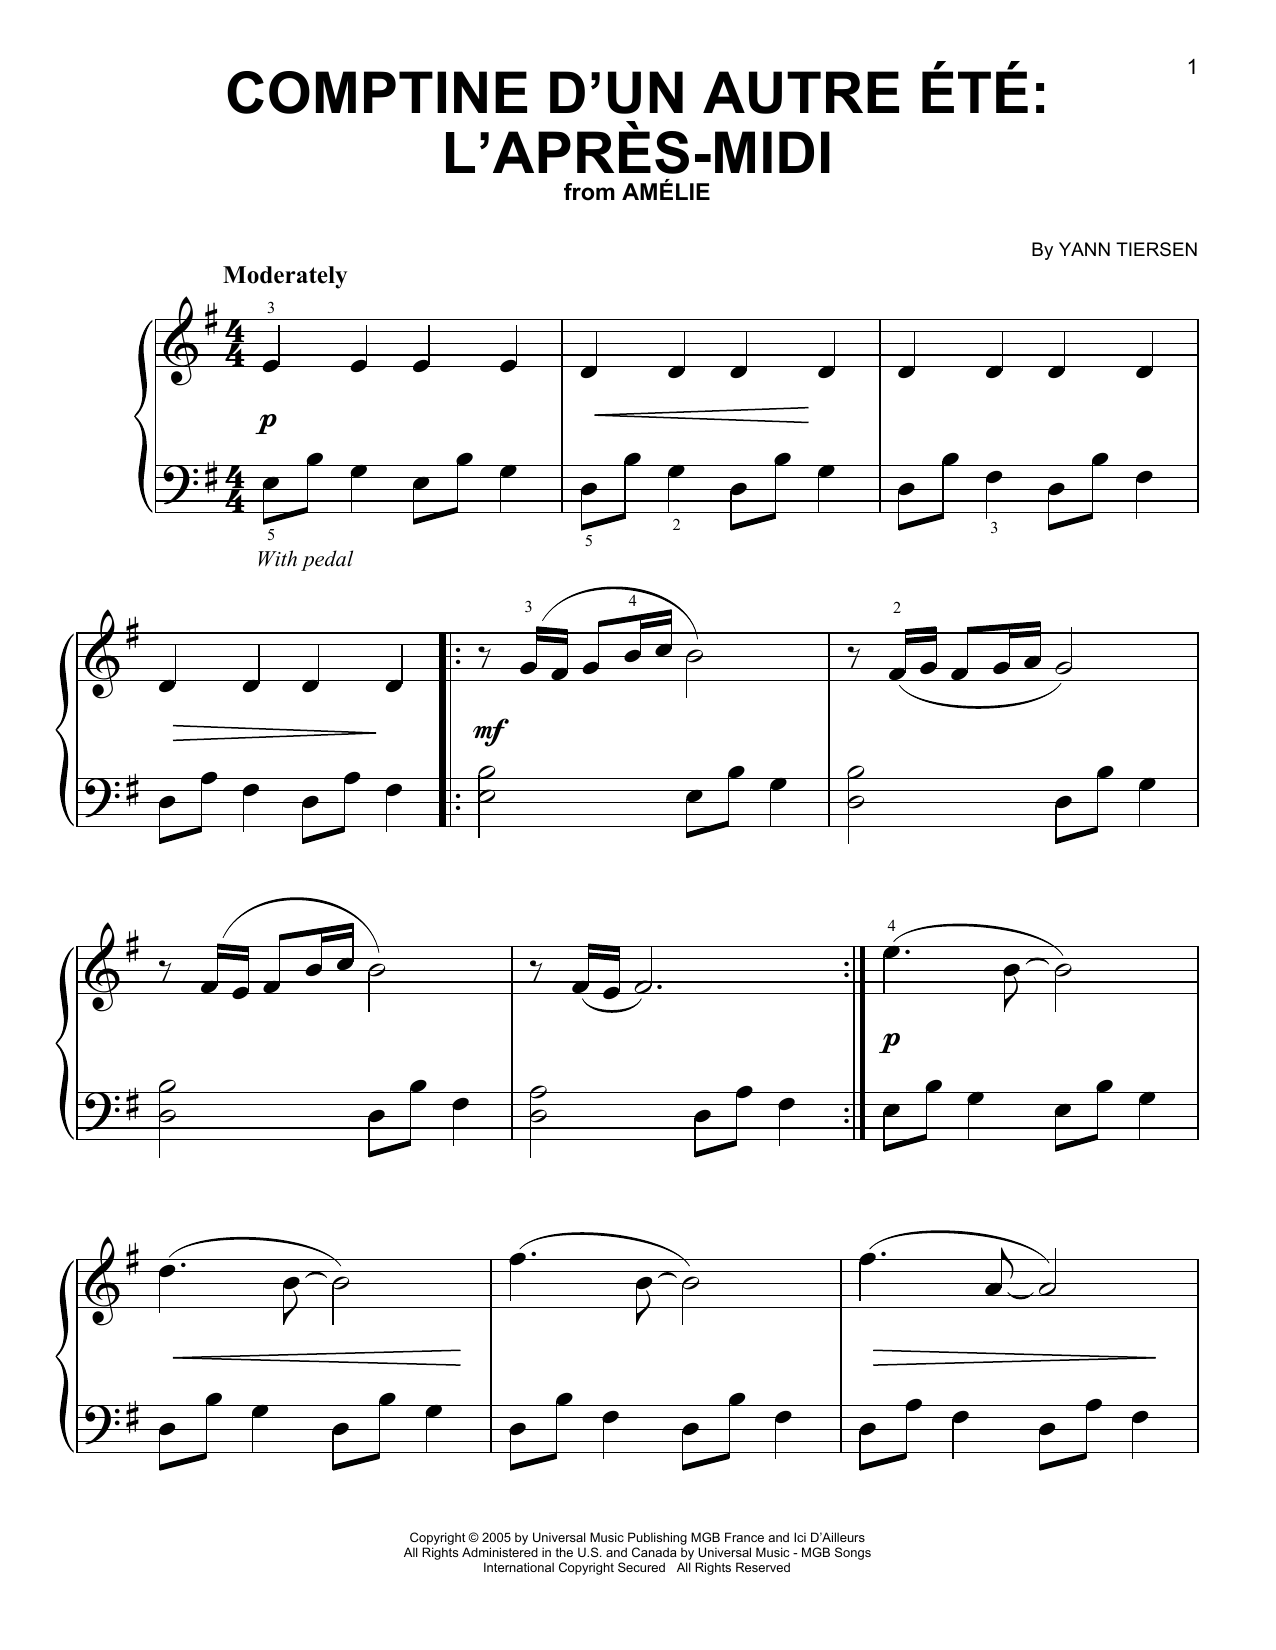 Yann Tiersen Comptine d'un autre été: L'après-midi Sheet Music Notes & Chords for Easy Piano - Download or Print PDF